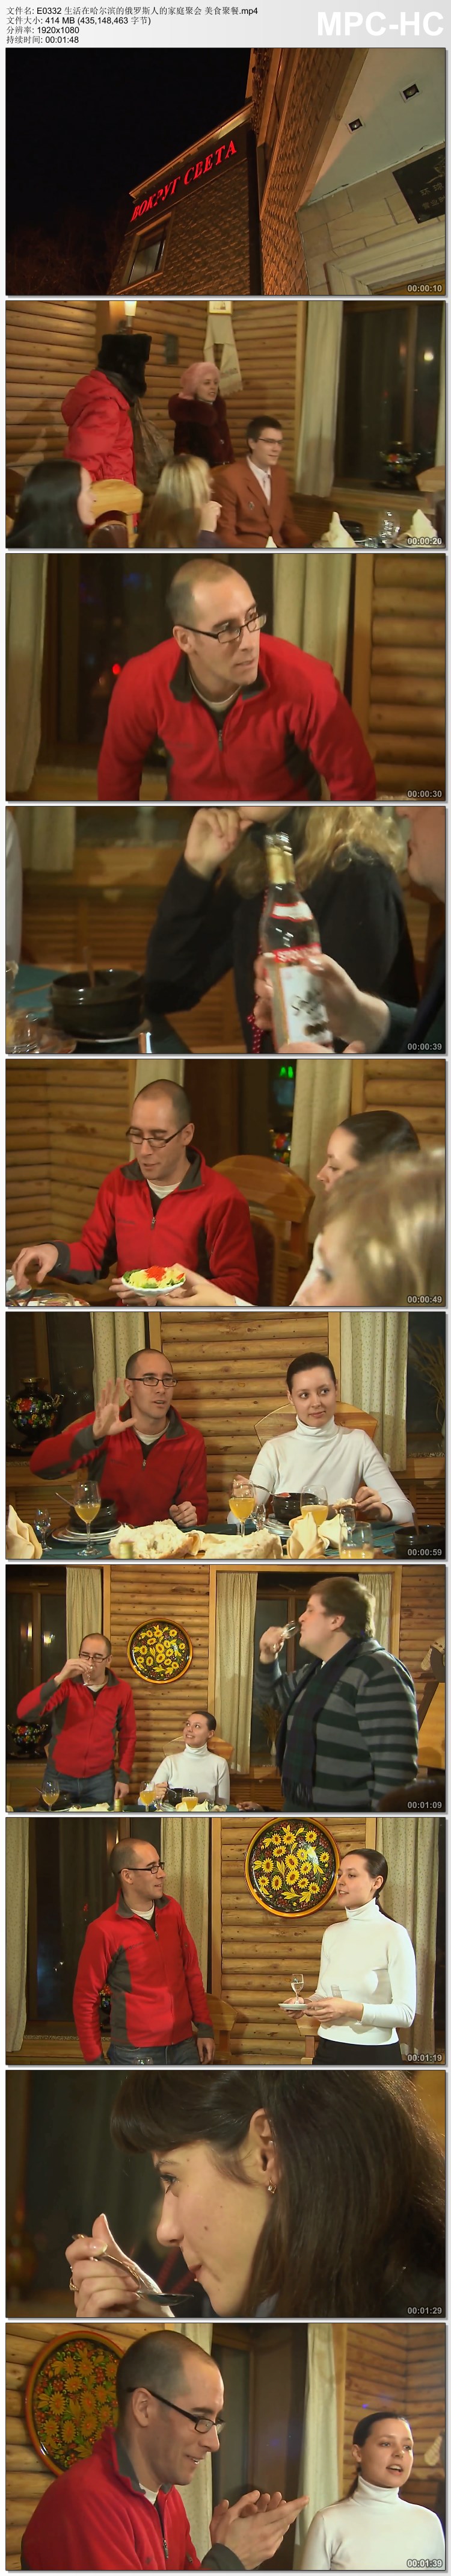 生活在哈尔滨的俄罗斯人的家庭聚会美食聚餐 高清实拍视频素材